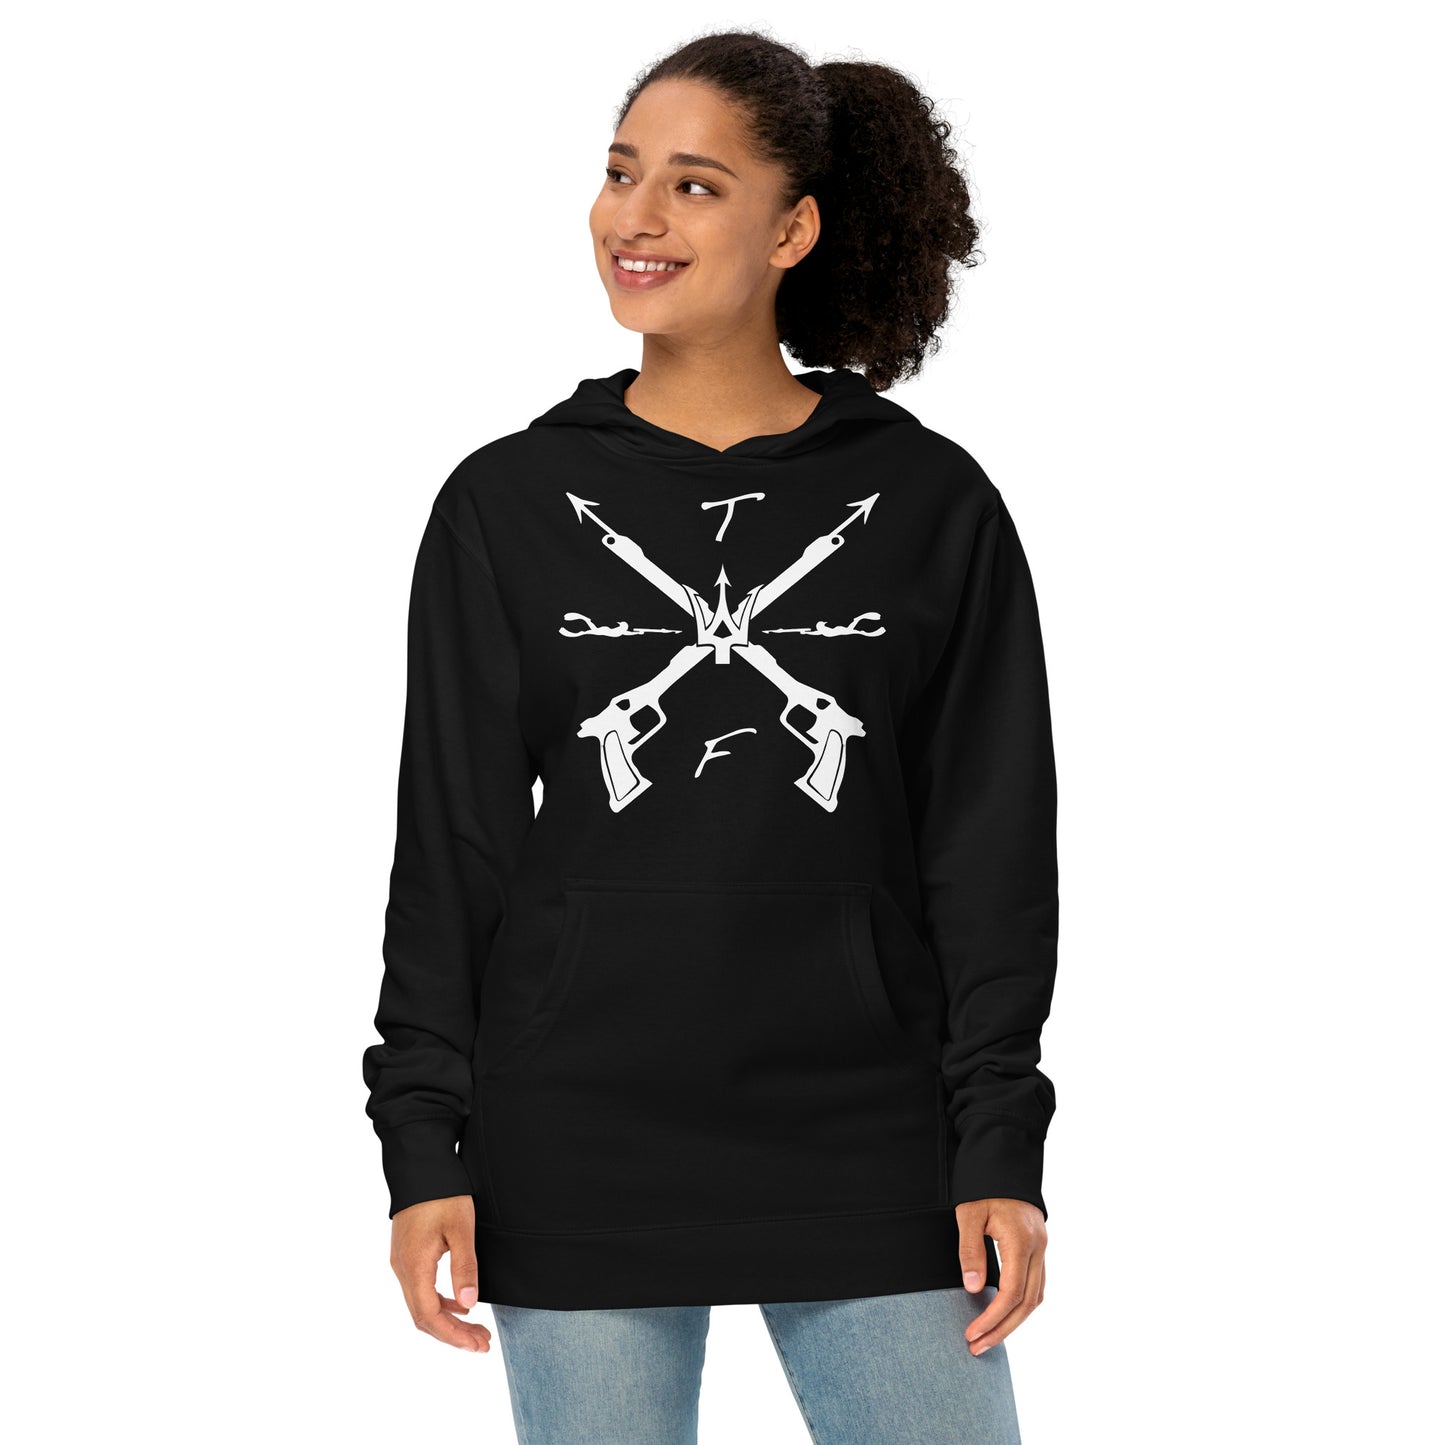 Cross Spearguns hoodie